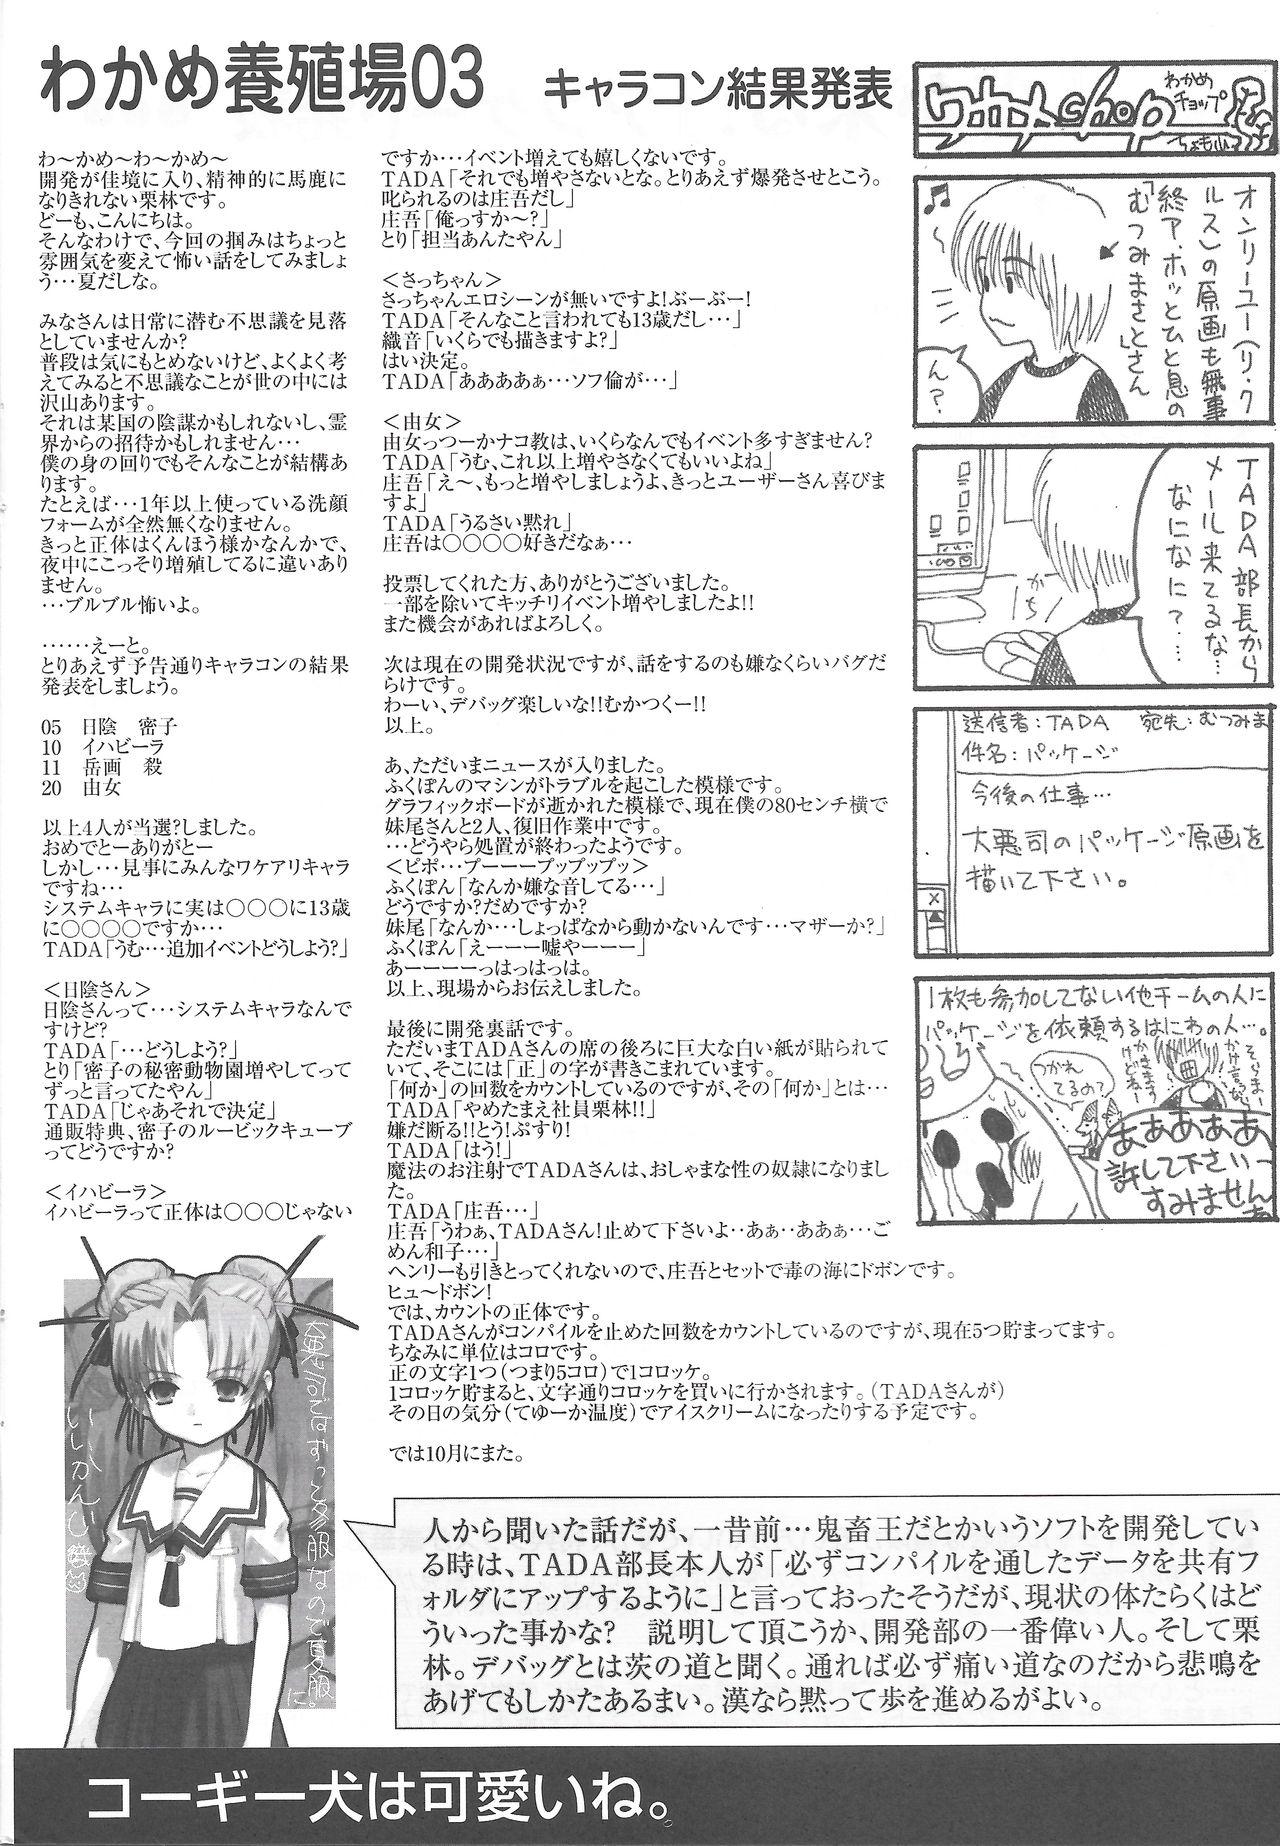 Arisu no Denchi Bakudan Vol. 18 8